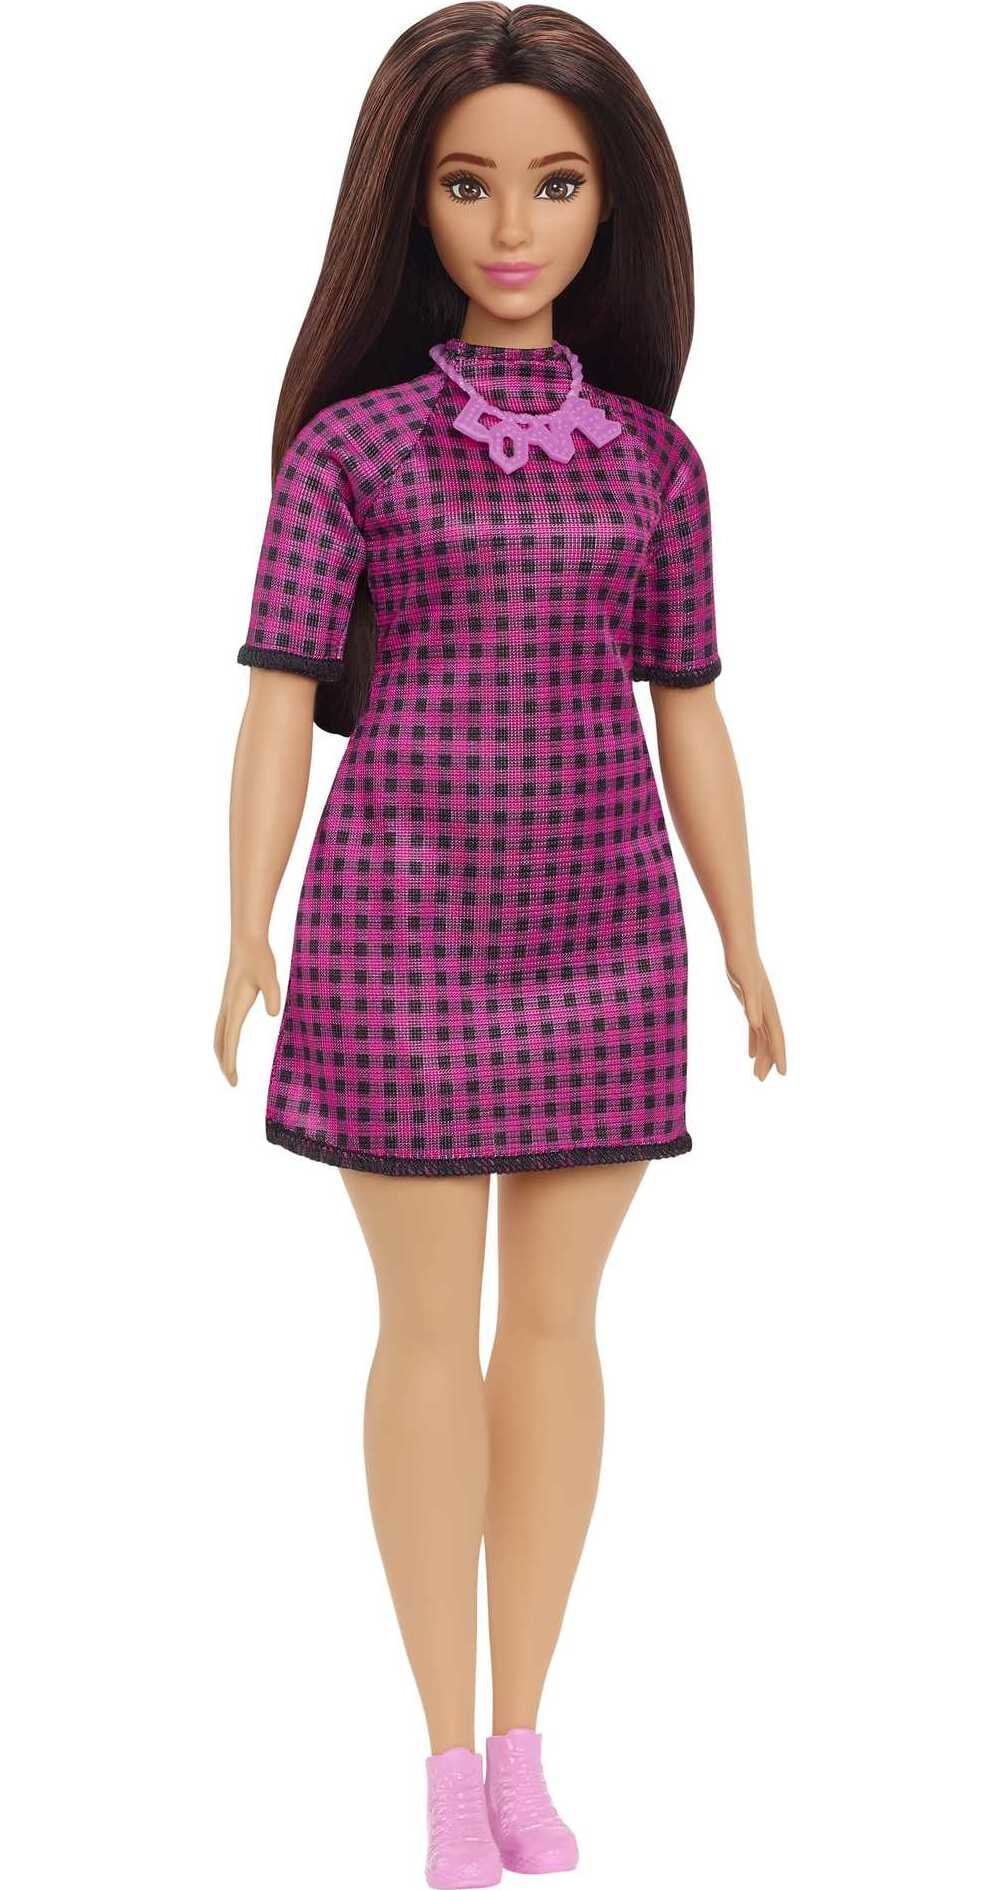 Barbie Fashionistas Doll # 188 en robe à carreaux Senegal